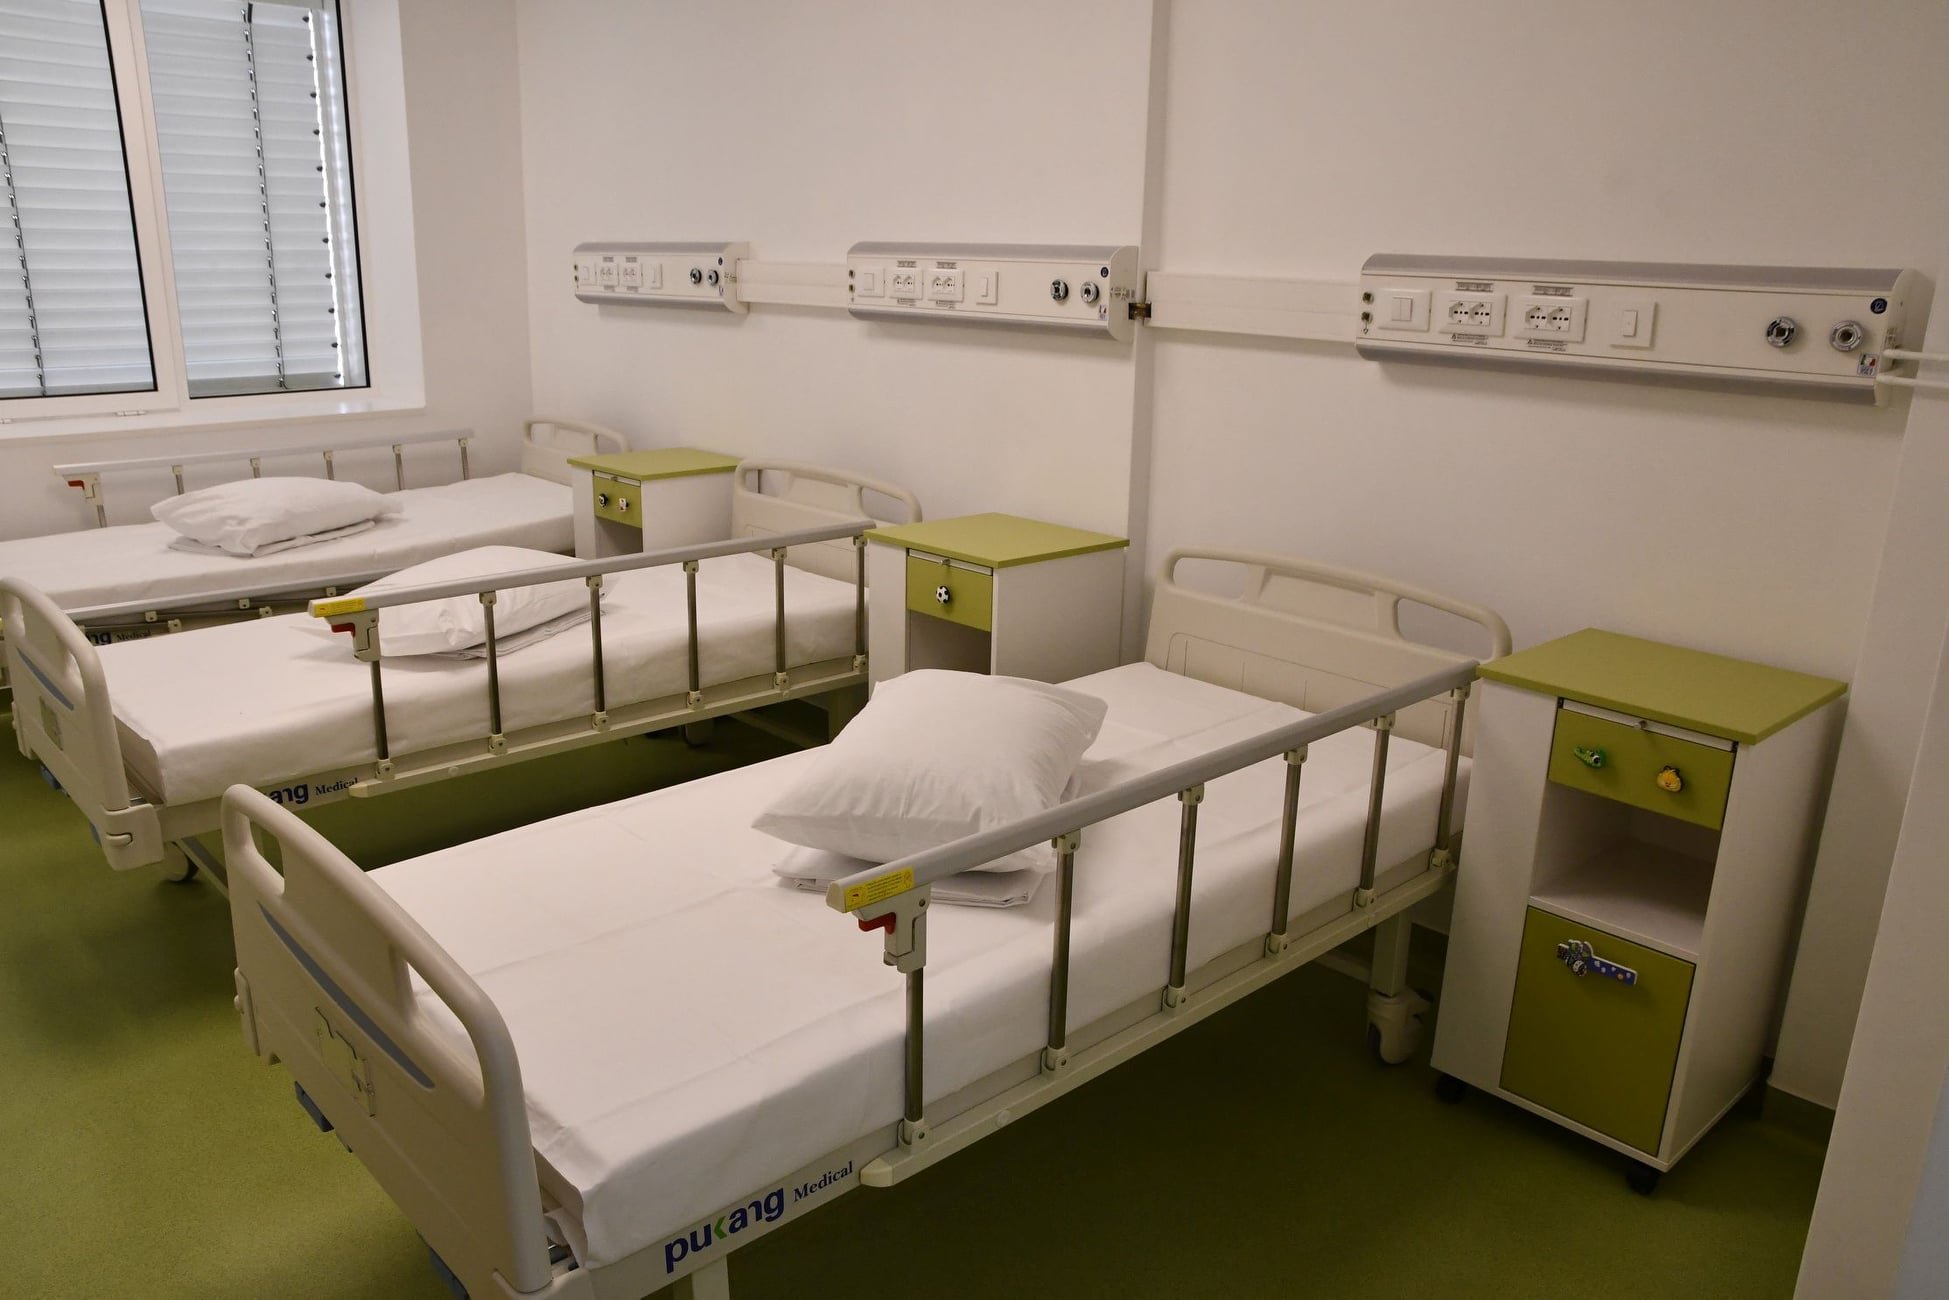  Spitalul de Copii, aflat în proces de modernizare, cumpără paturi și noptiere